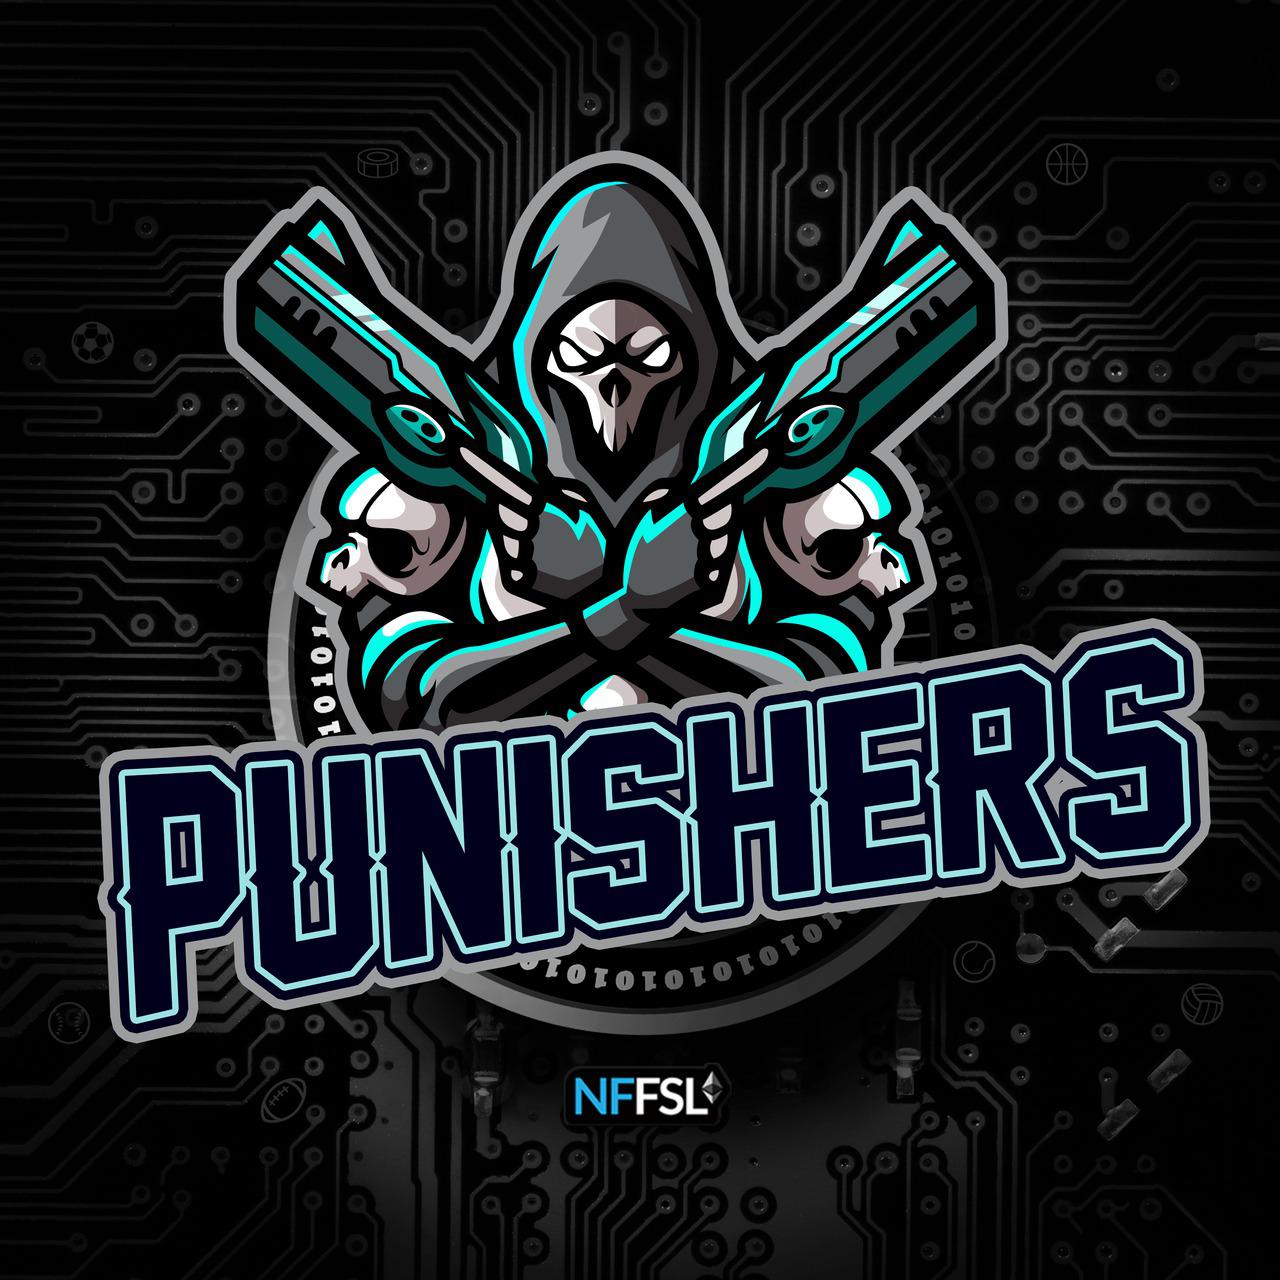 Punishers_NFFSL